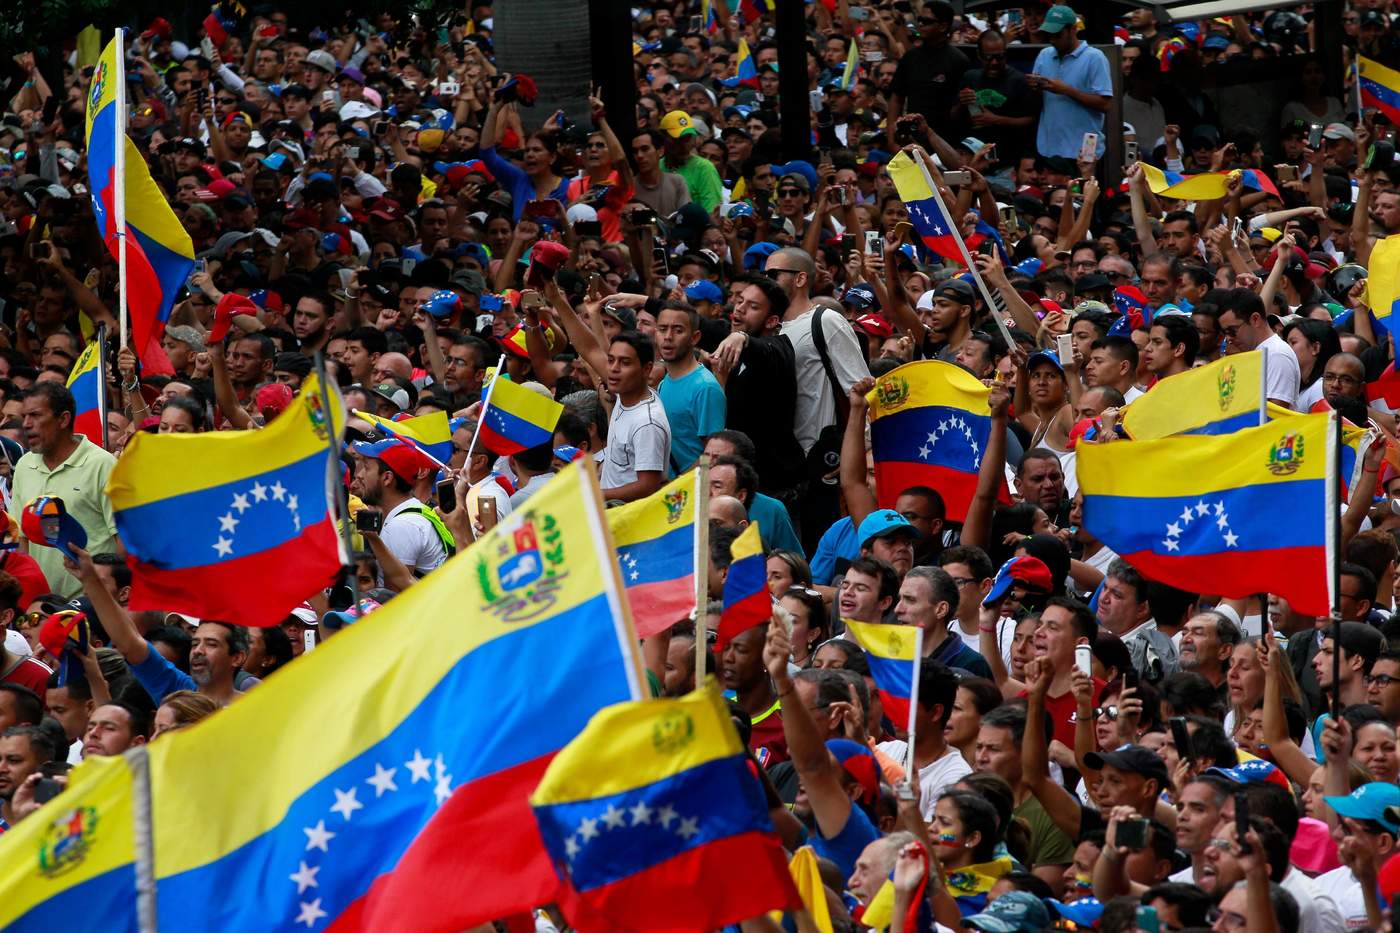 En un comunicado agregó que, conforme a los principios de derecho internacional, México y Uruguay urgen a todos los actores a encontrar una solución pacífica y democrática frente al complejo panorama que enfrenta Venezuela. (EFE)